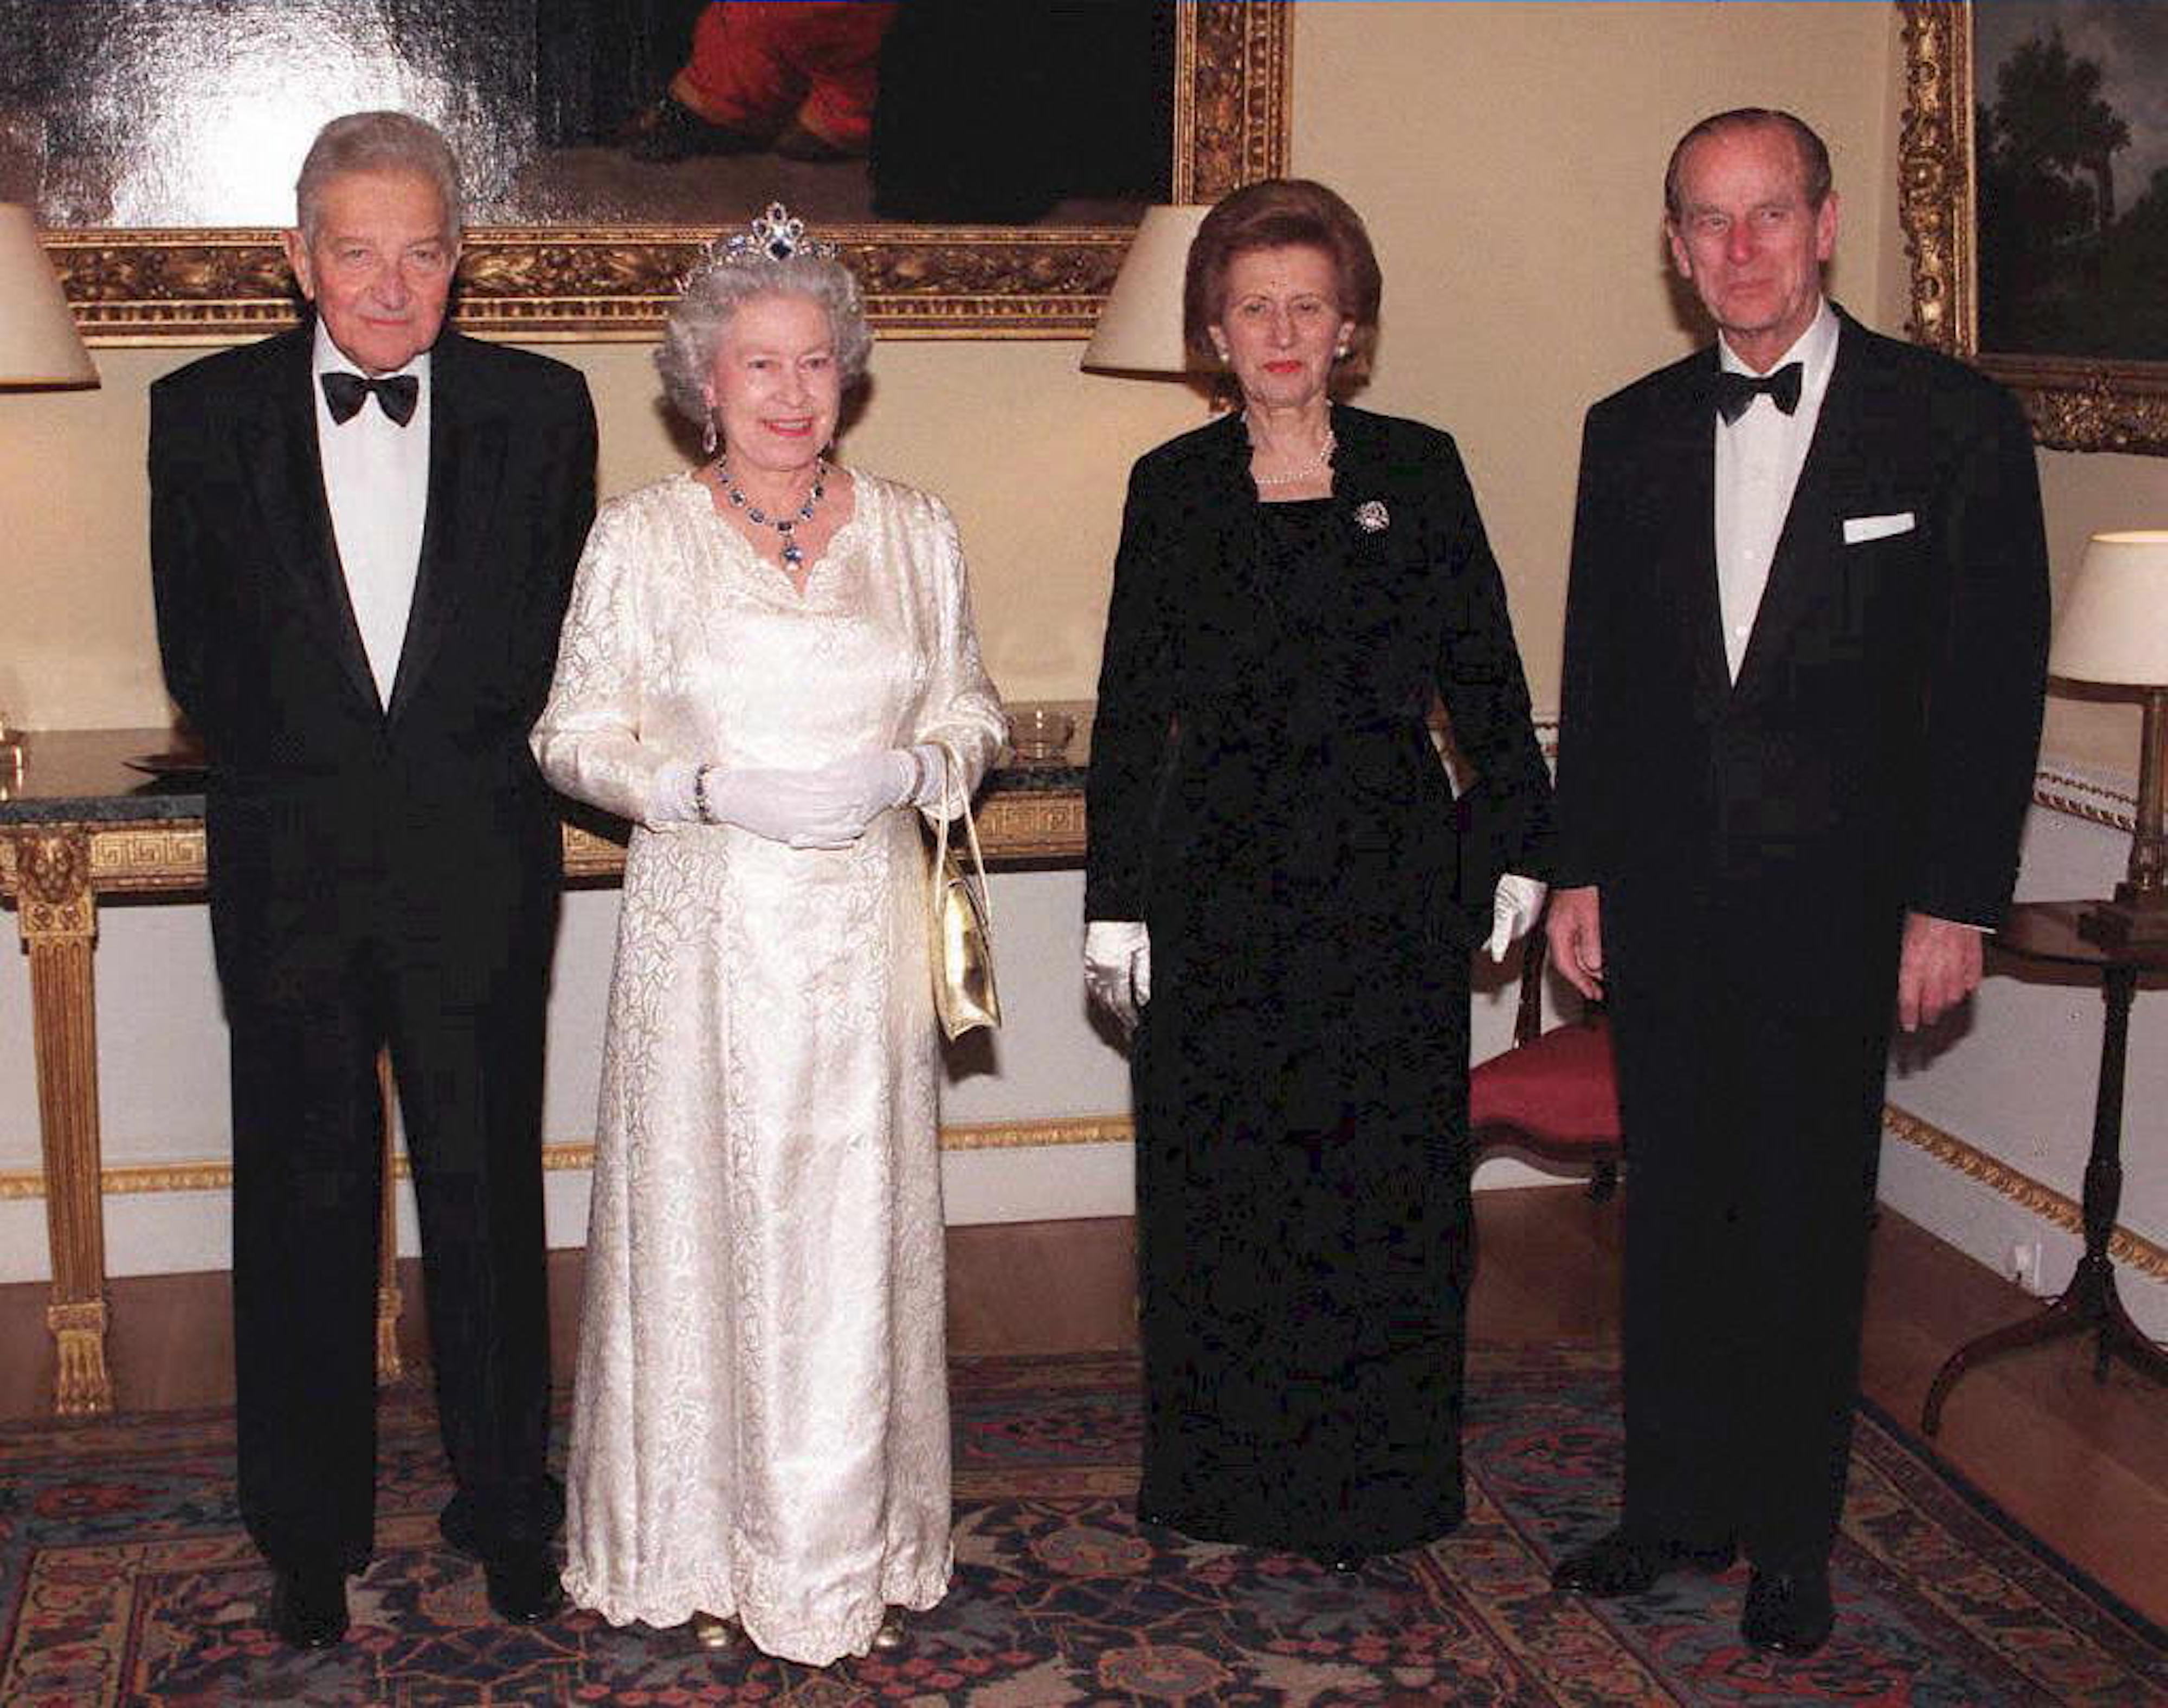 Le président israélien Ezer Weizman (à gauche) et son épouse Reuma (deuxième en partant de la droite) posent avec la reine Elizabeth II et le duc d’Édimbourg lors d’une visite officielle à Londres en février 1997 (AFP)